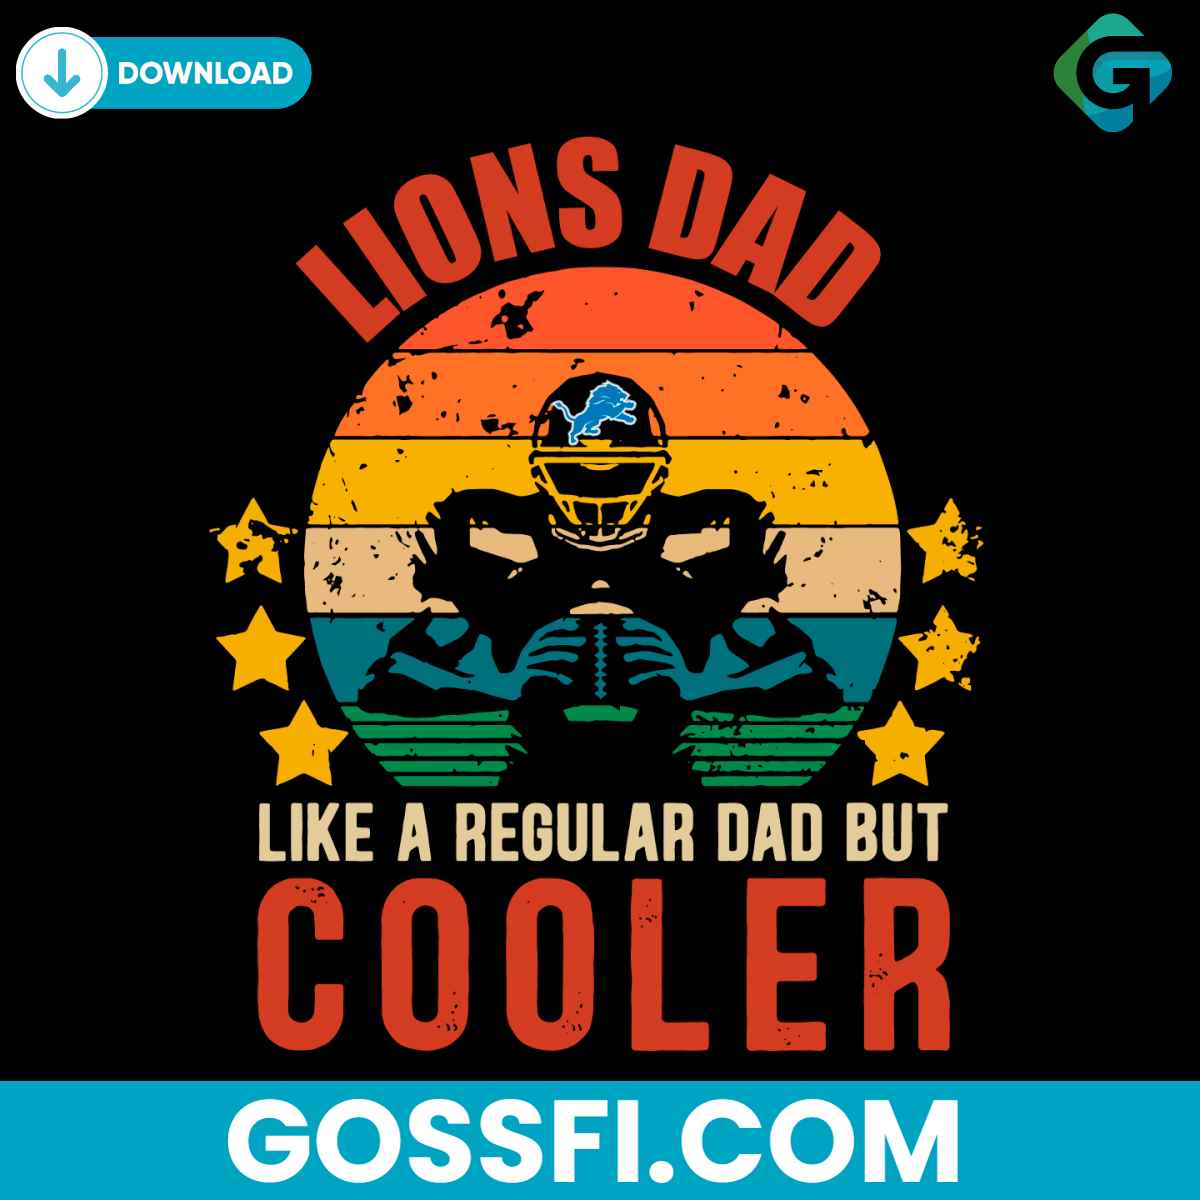 lions-dad-like-a-regular-dad-but-cooler-svg